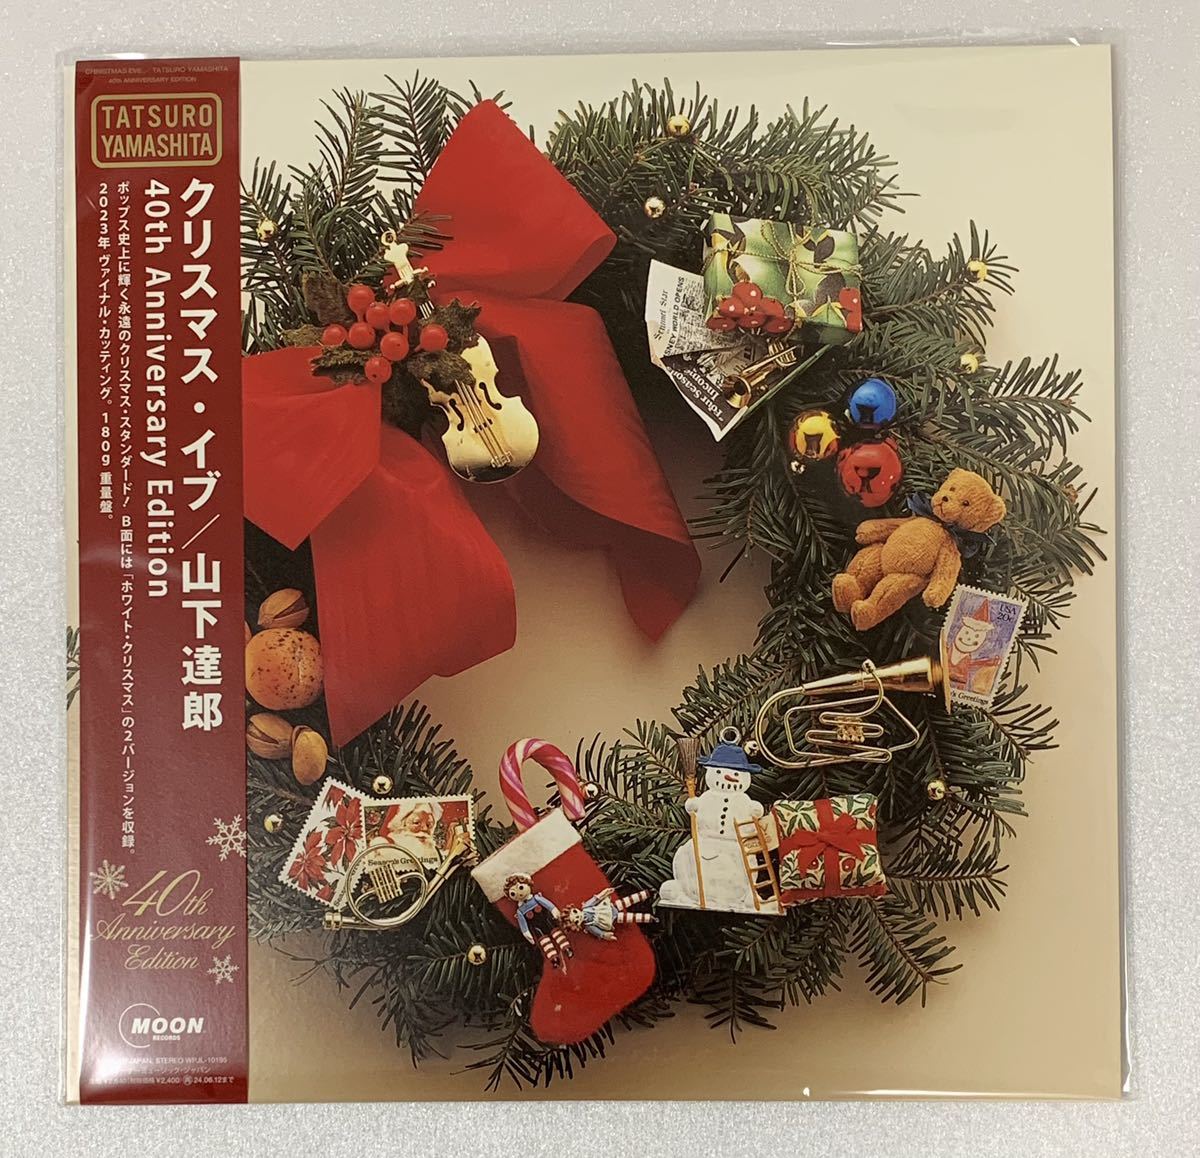 新品 山下達郎 クリスマス・イブ (40th Anniversary Edition) Analog レコード 完全生産限定盤_画像1